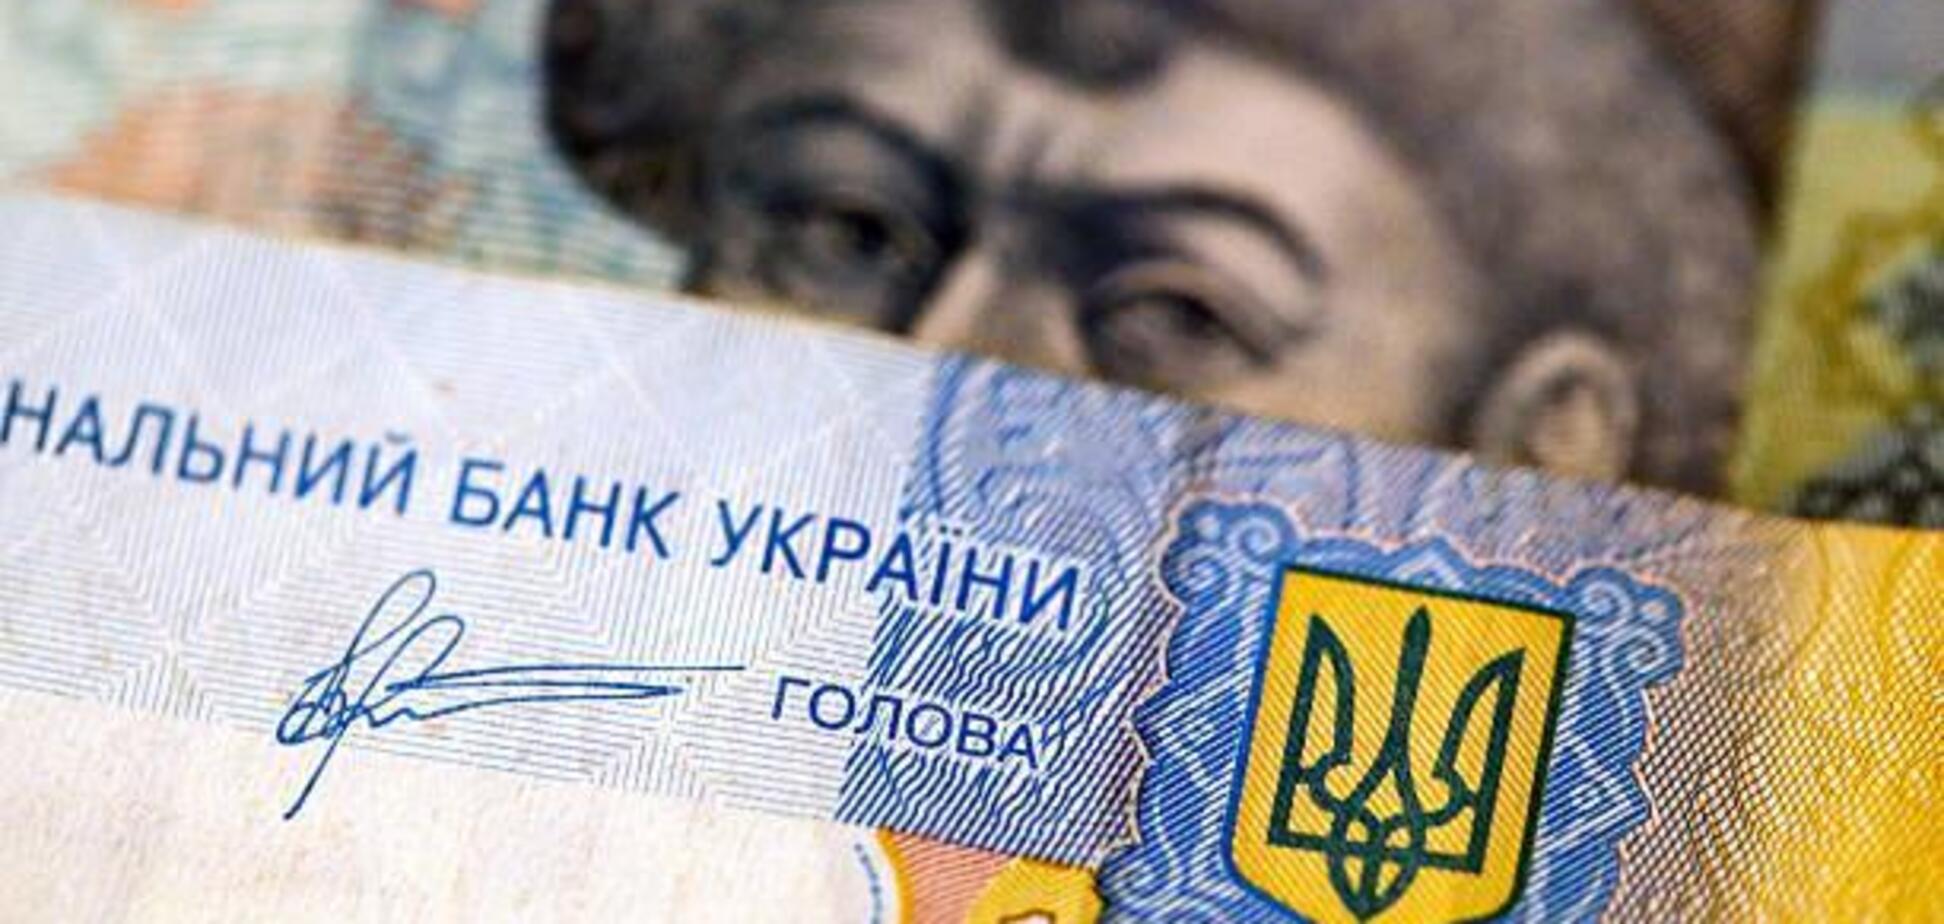 'Весь мир живет в долг': в Украине развенчали угрозу дефолта для страны